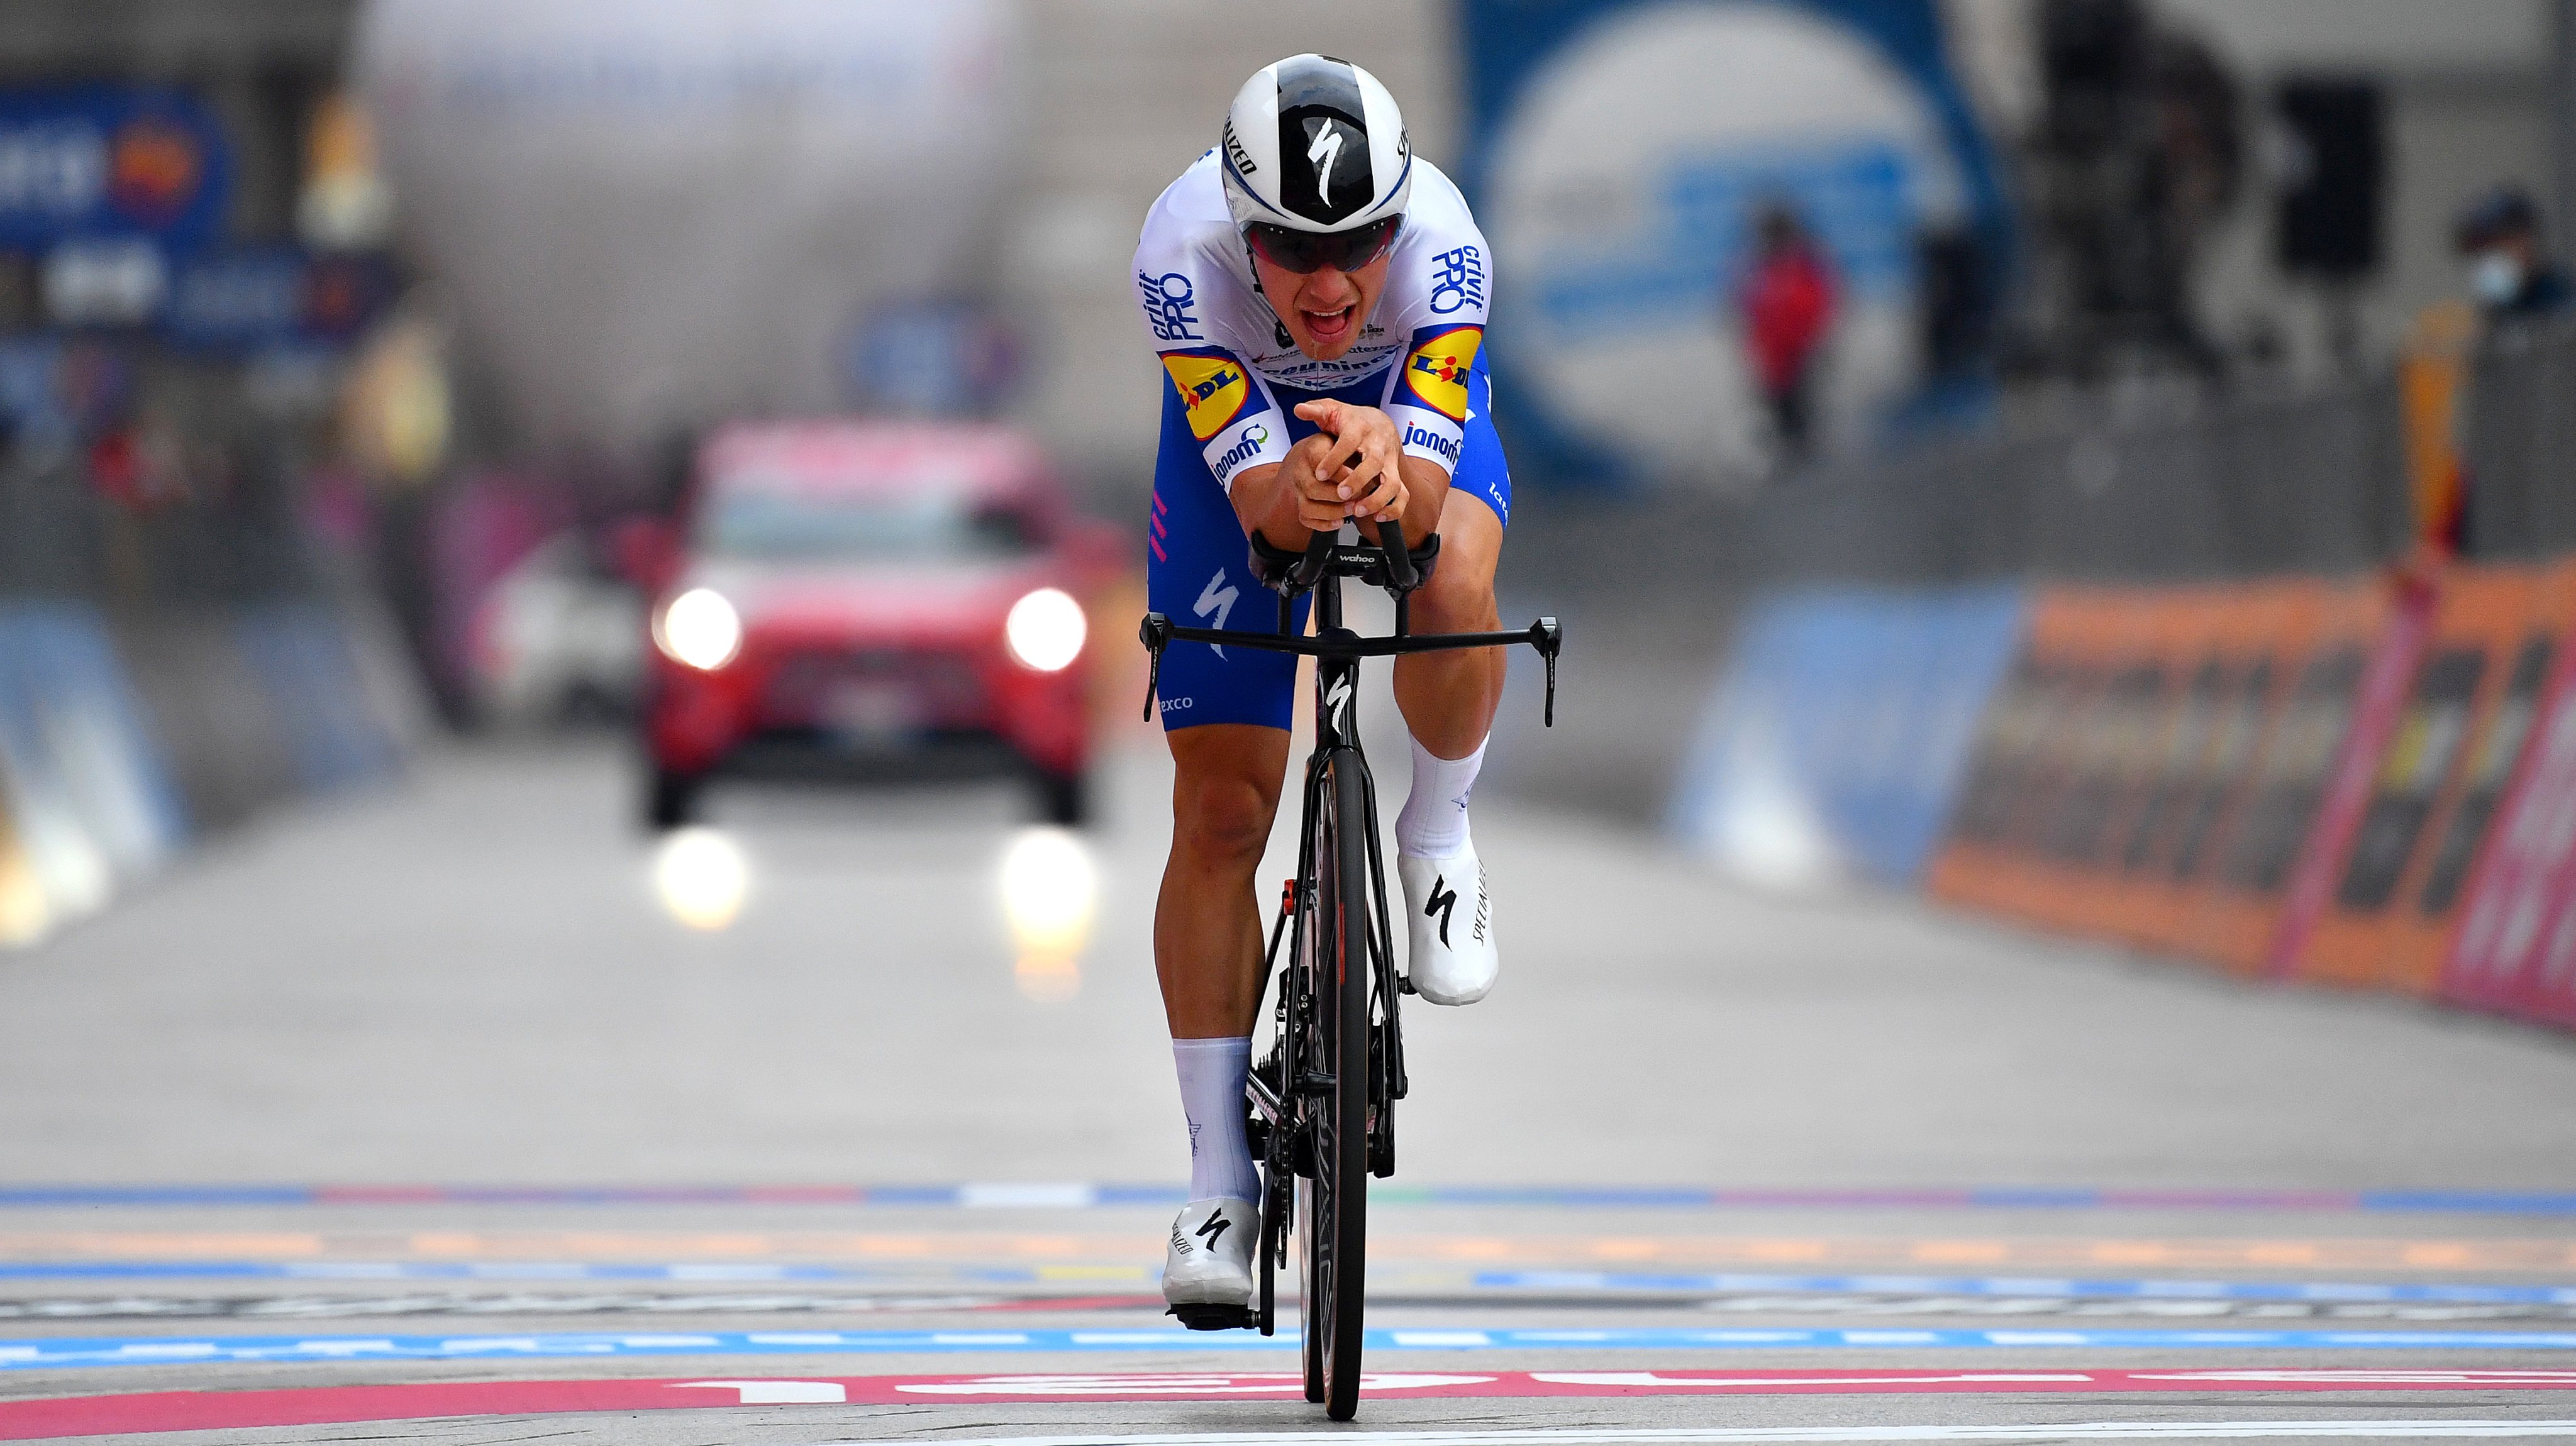 João Almeida fez o melhor tempo no contrarrelógio entre todos os corredores apontados ao top 3 do Giro de 2021